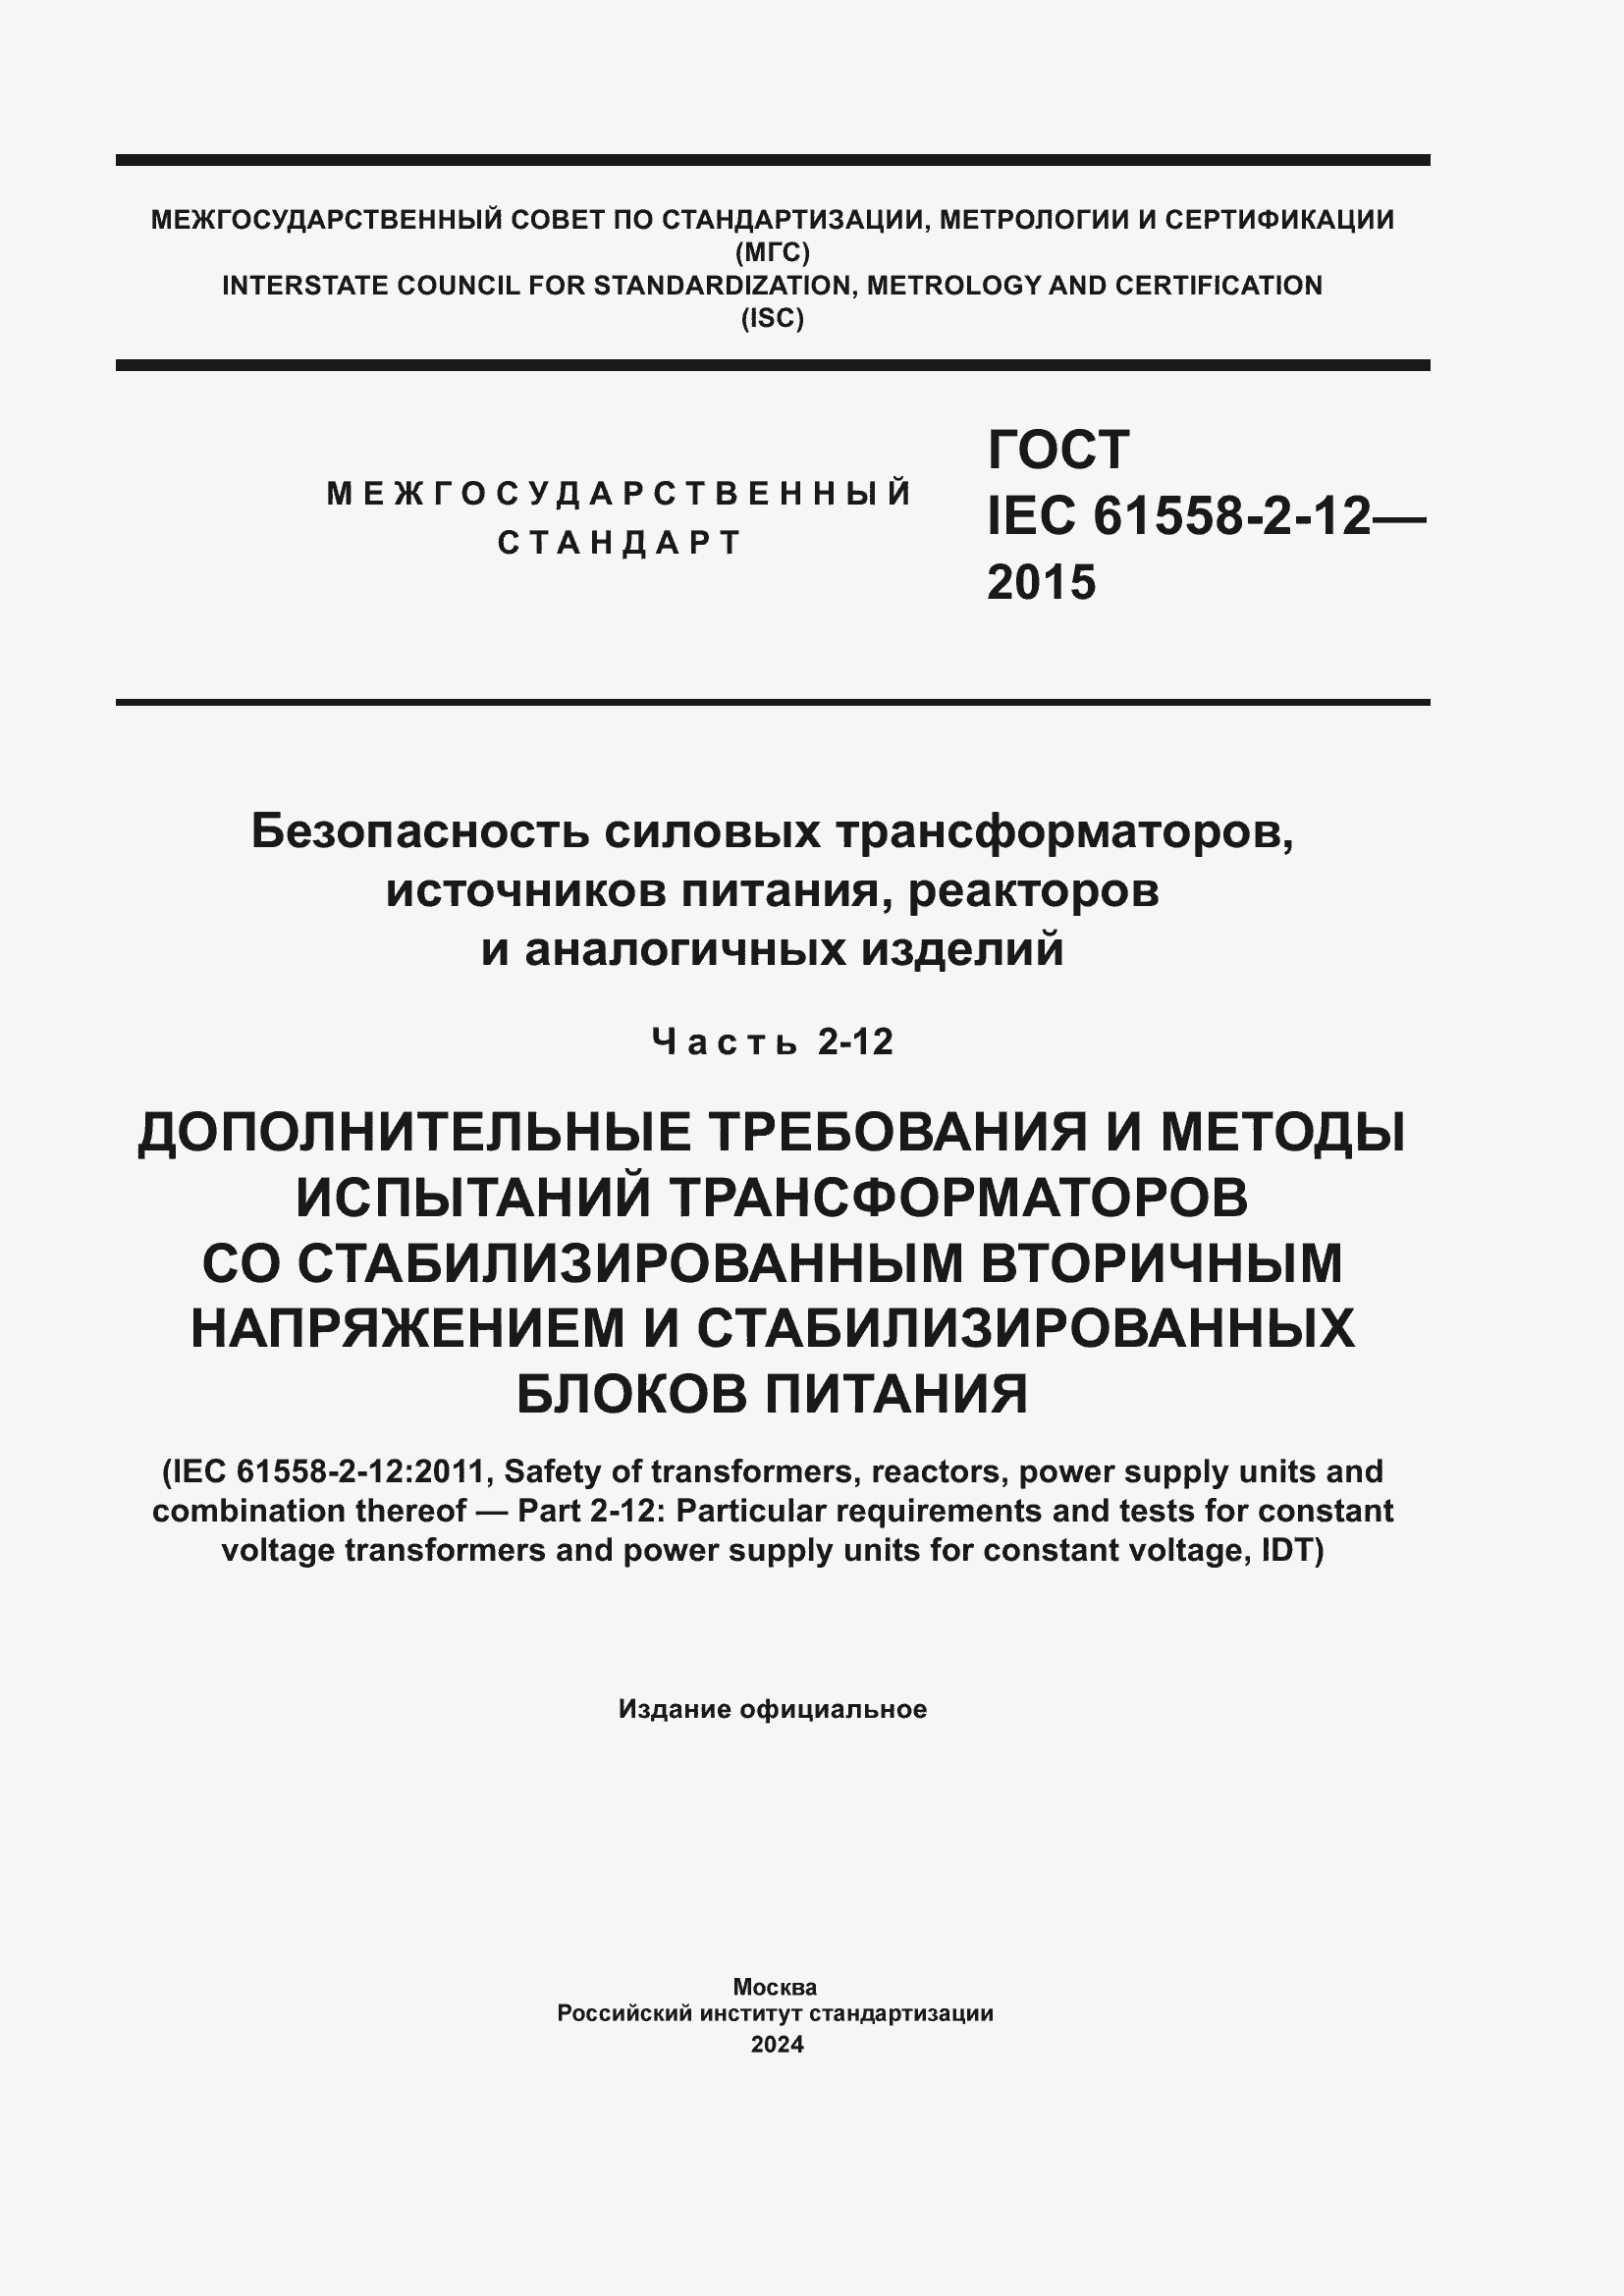  IEC 61558-2-12-2015.  1